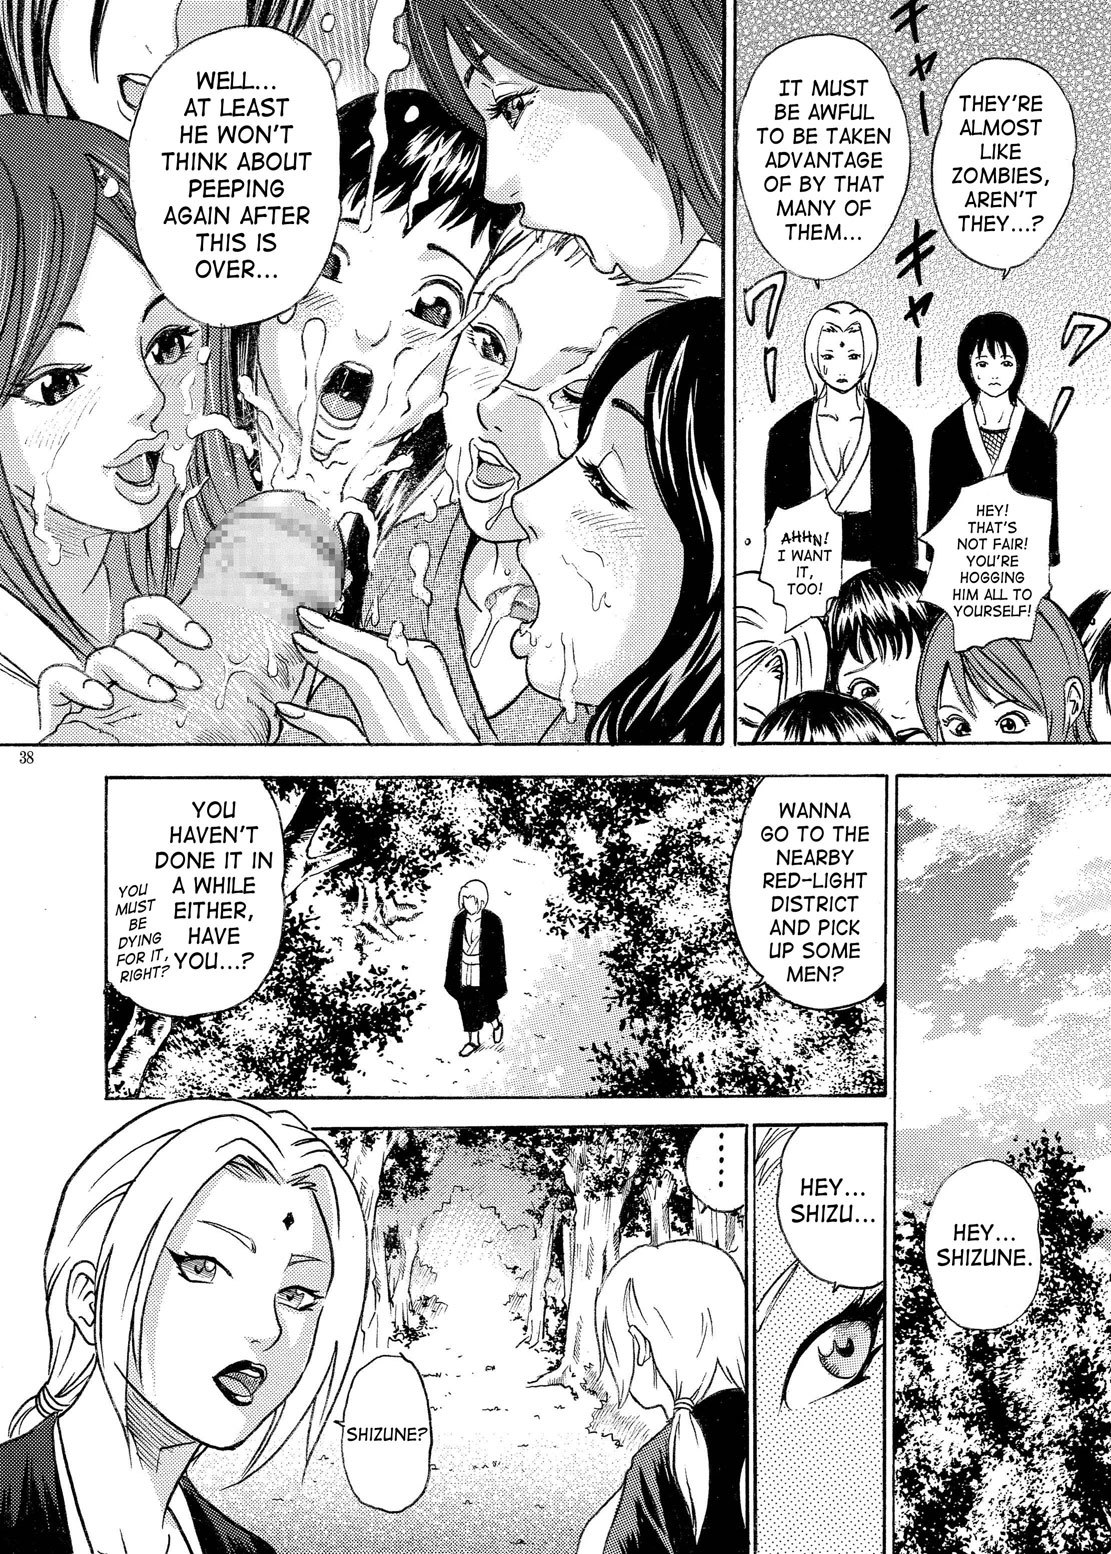 PM 9 - Indecent Ninja Exam naruto 34 hentai manga